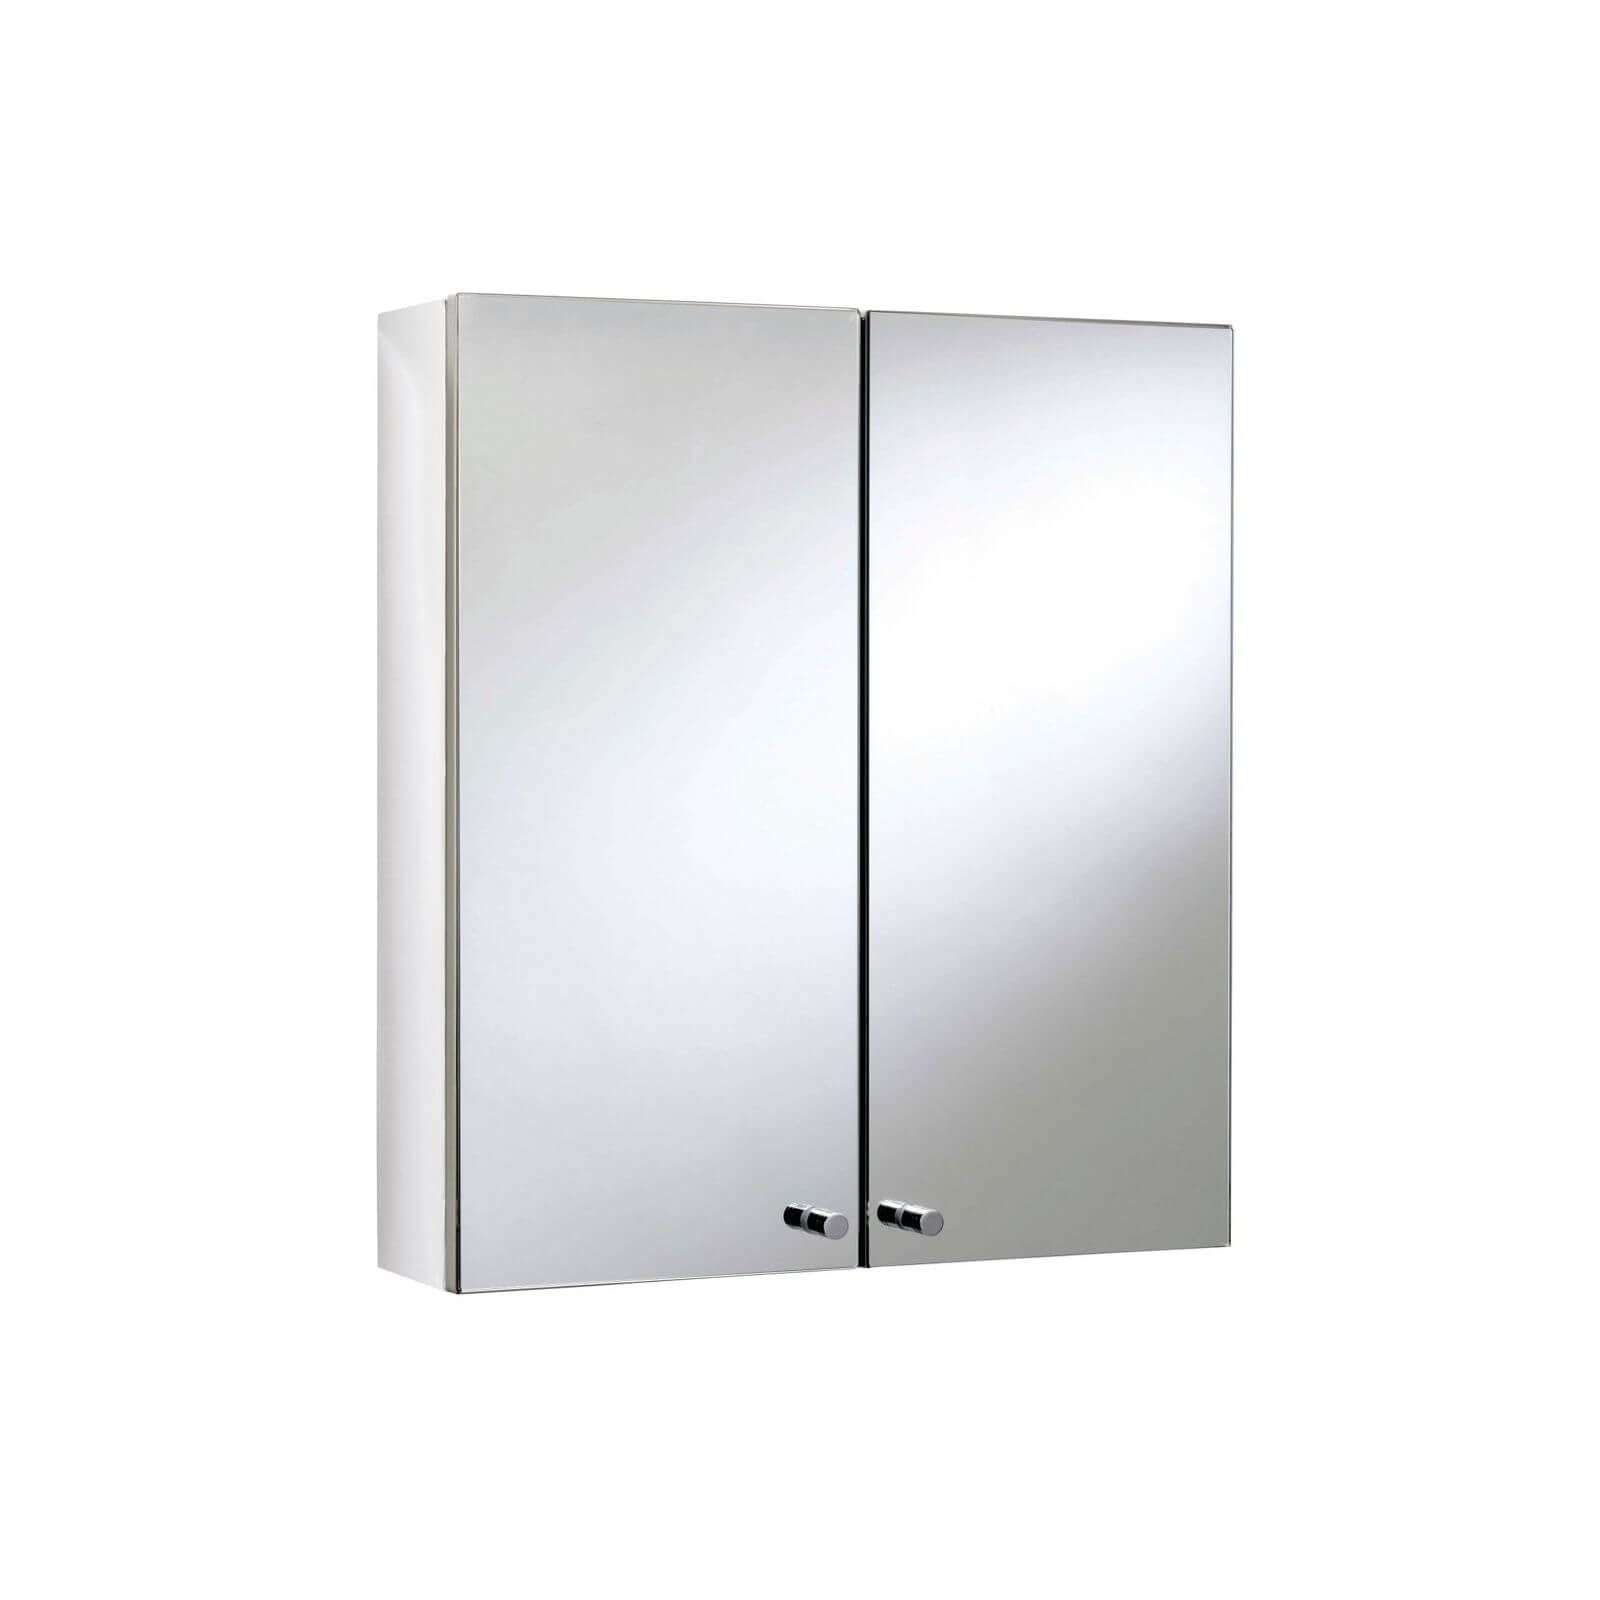 Croydex Michigan Double Door Bathroom Cabinet - Stainless Steel